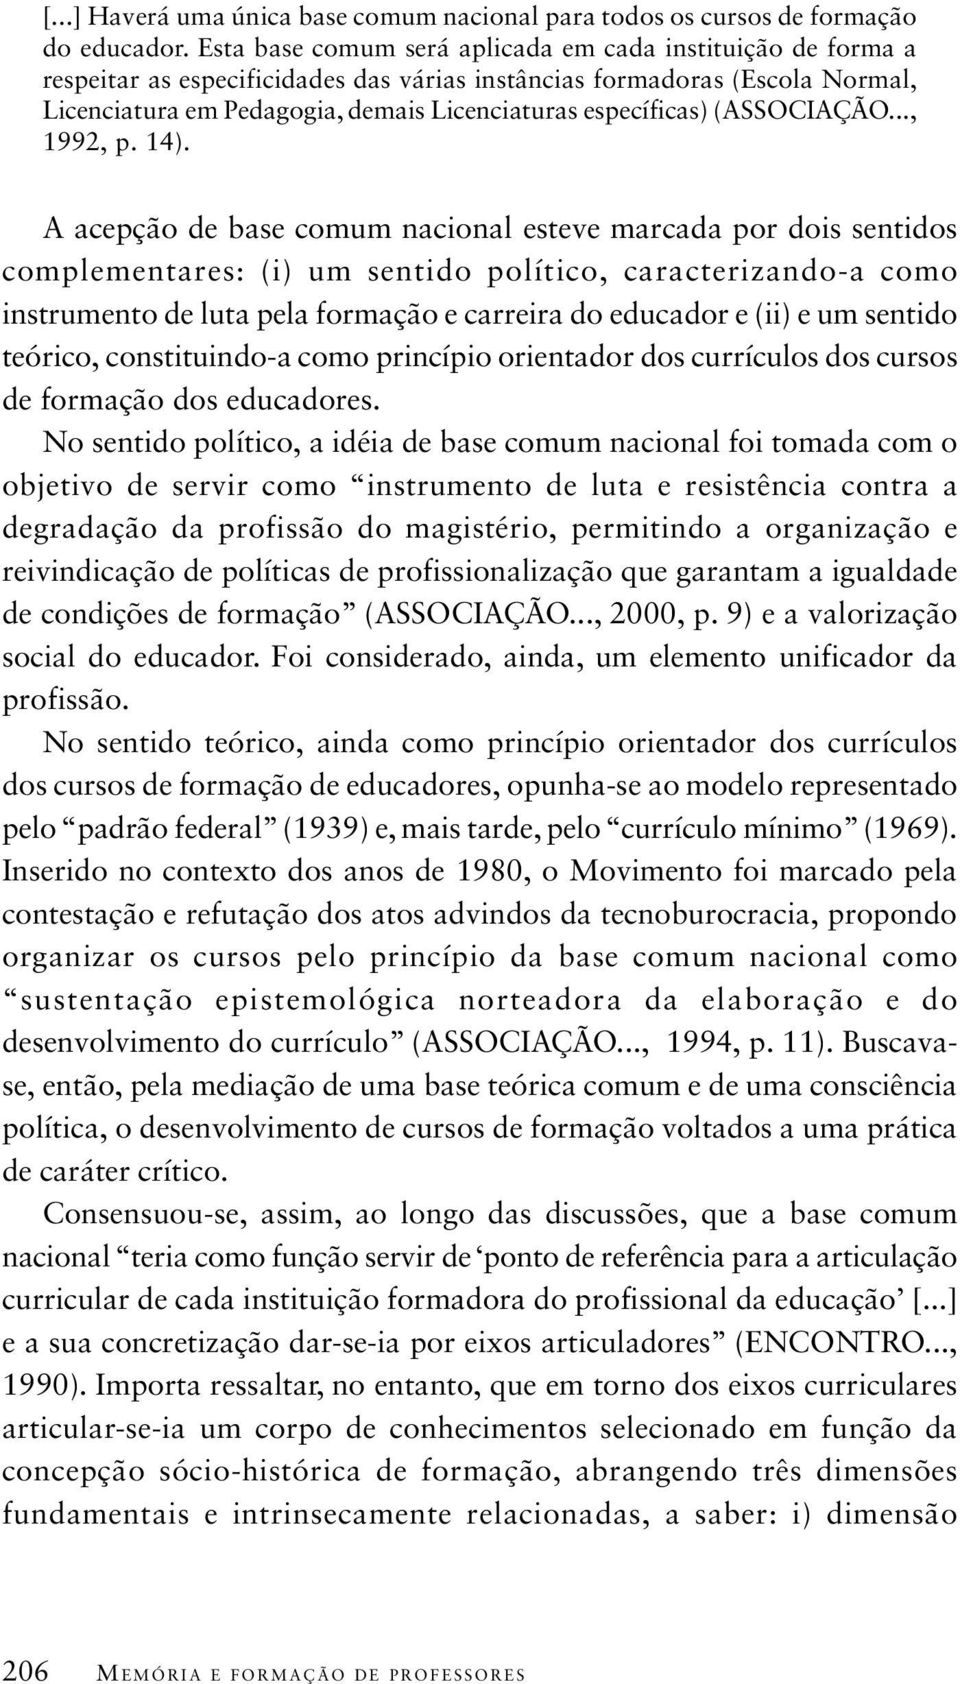 (ASSOCIAÇÃO..., 1992, p. 14).